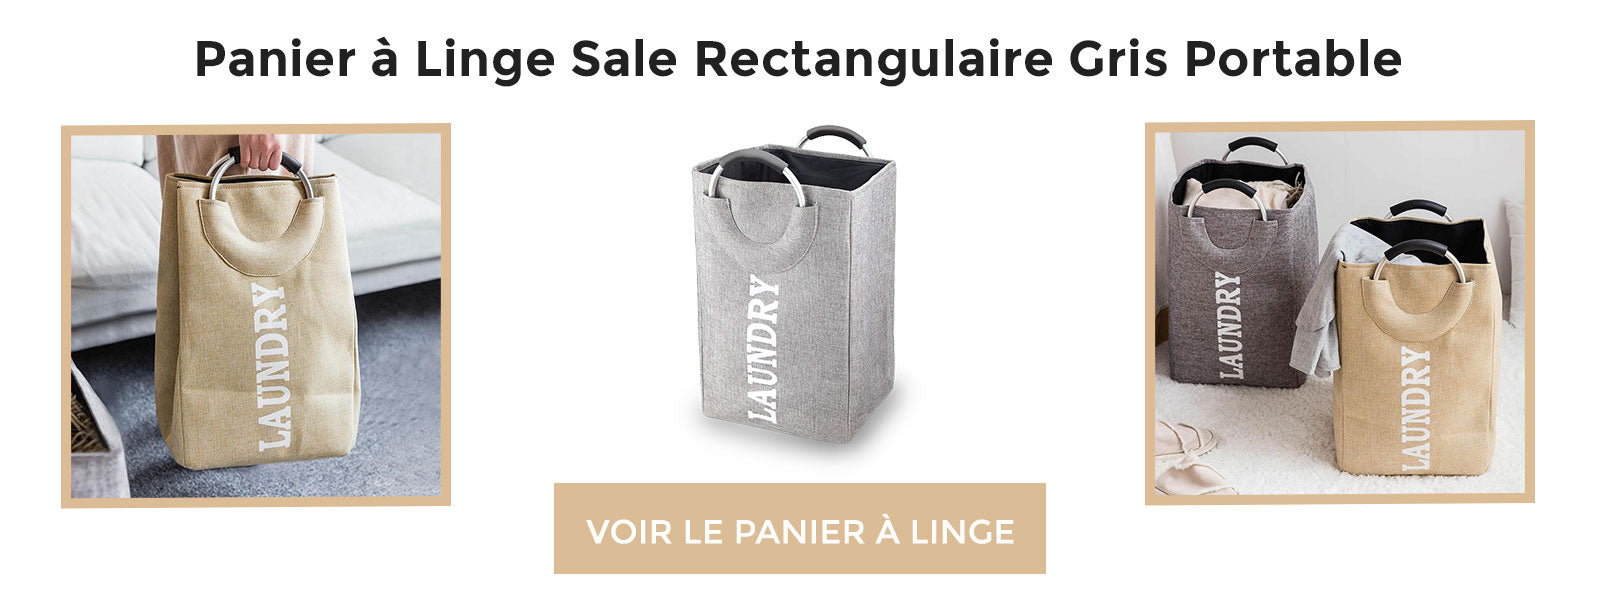 bannière Panier à Linge Sale Rectangulaire Gris Portable